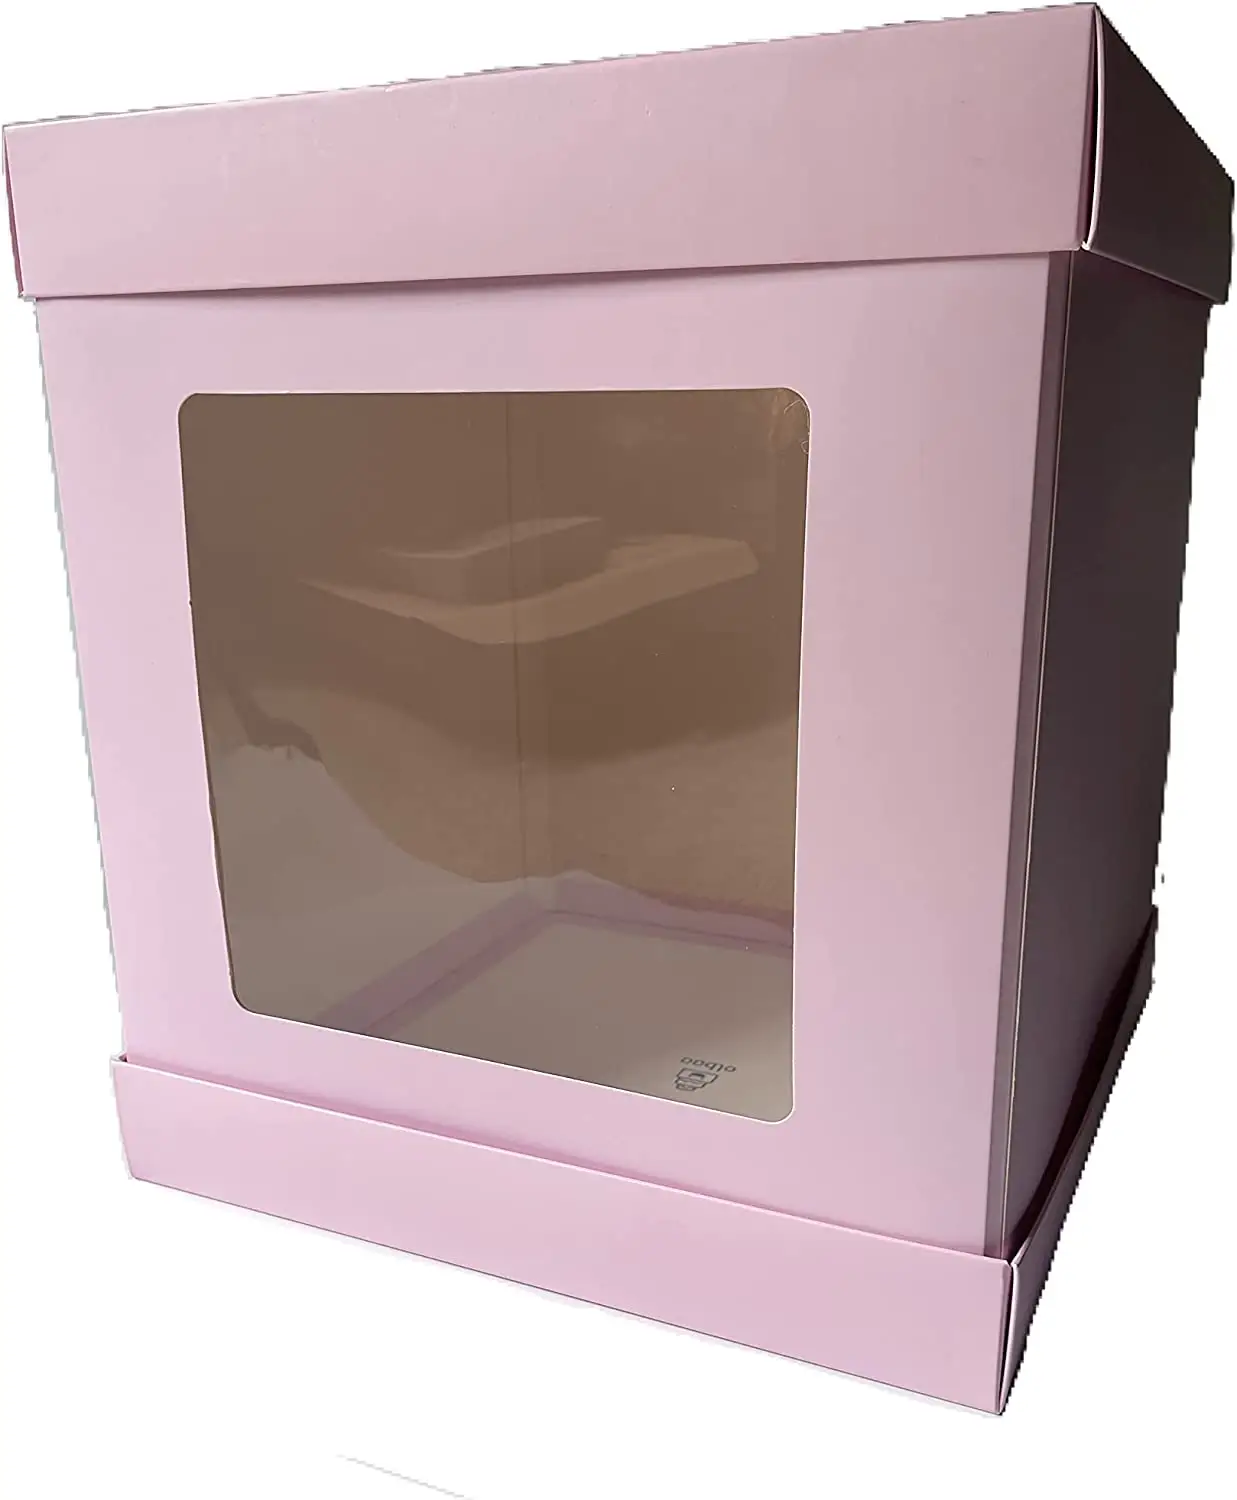 Vente en gros Boîte à gâteau rose personnalisée 10x10x12 pouces, blanc uni, boîtes d'emballage pour pâtisserie et boulangerie en vrac Grande boîte à gâteau au lait